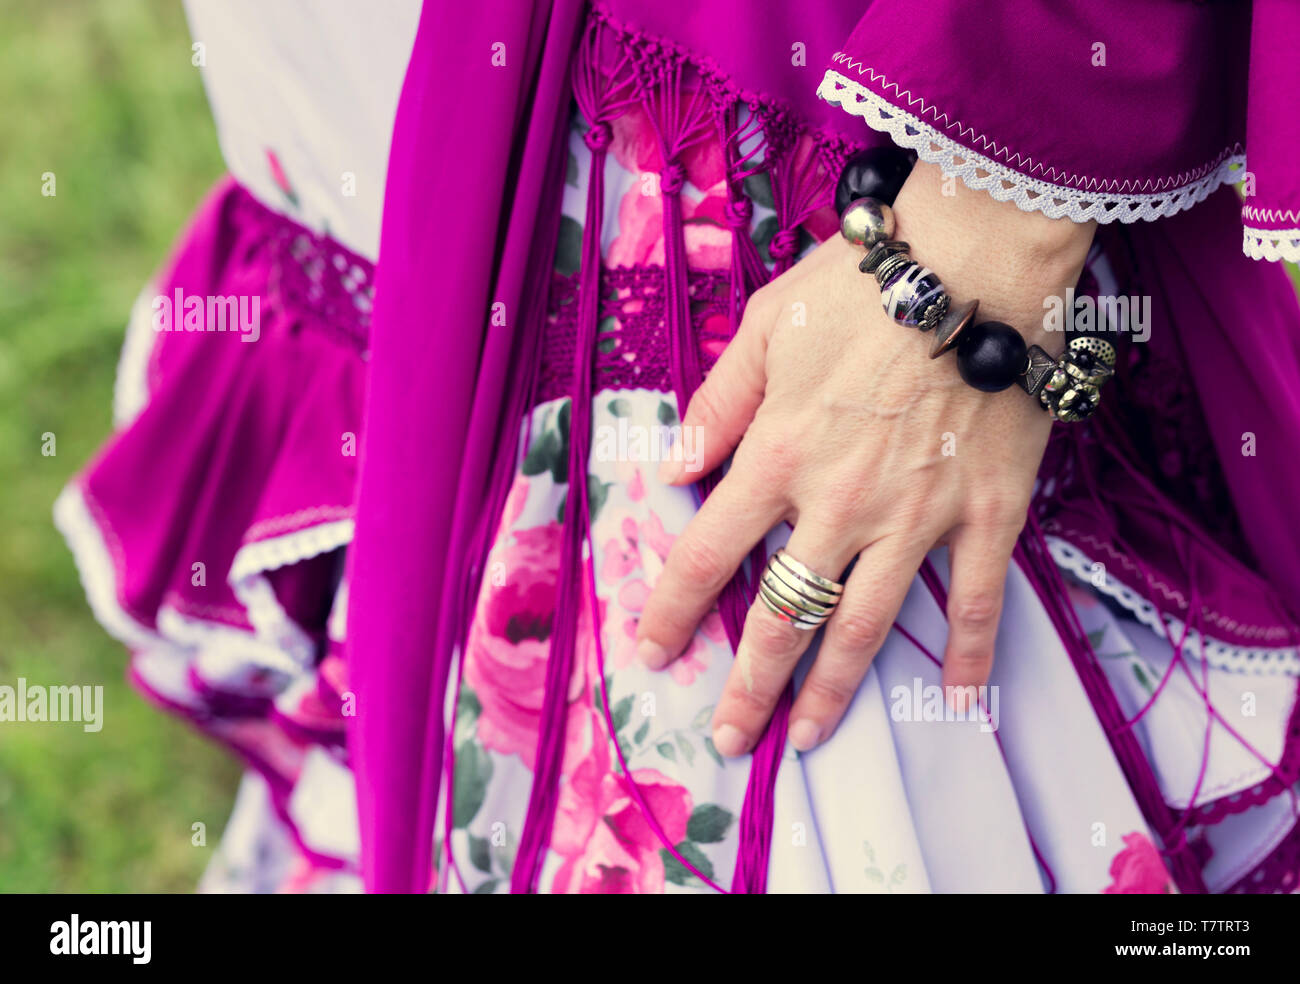 Mains d'une femme espagnole décorée de bijoux à Séville, foire d'avril Banque D'Images